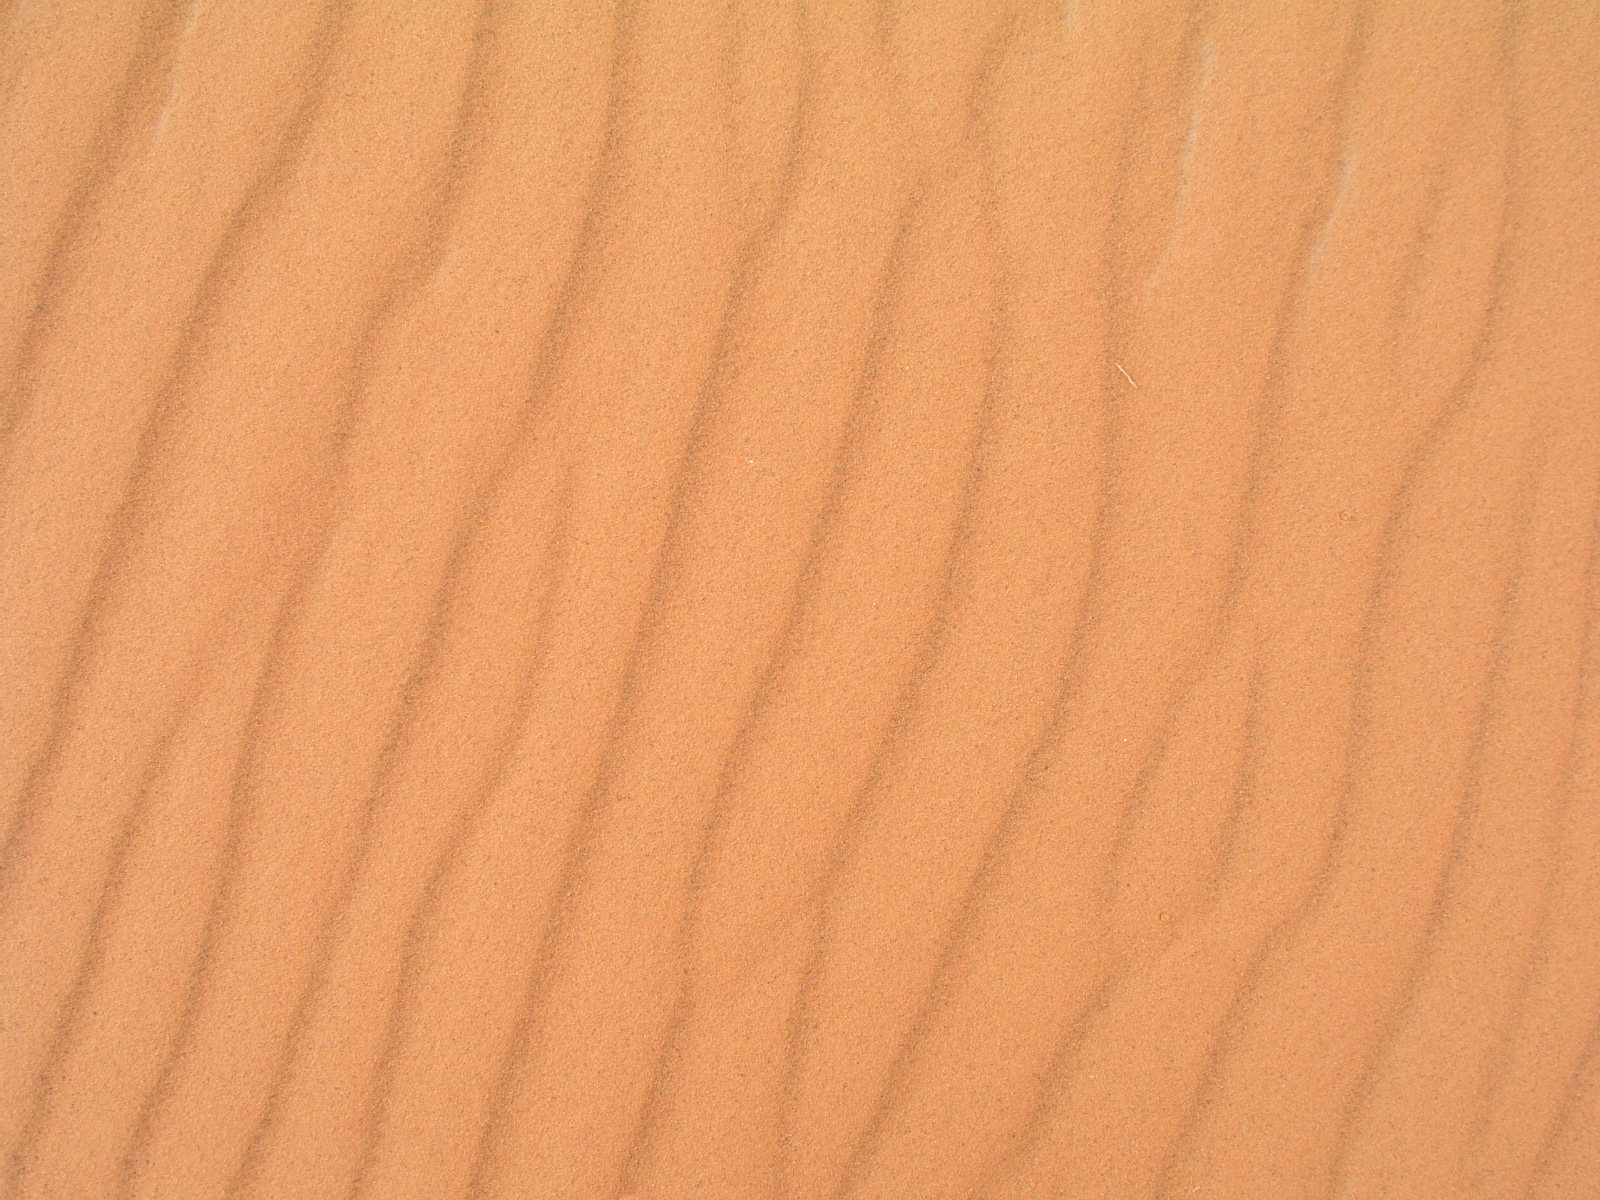 волнистый песок, пустыня, текстура, скачать